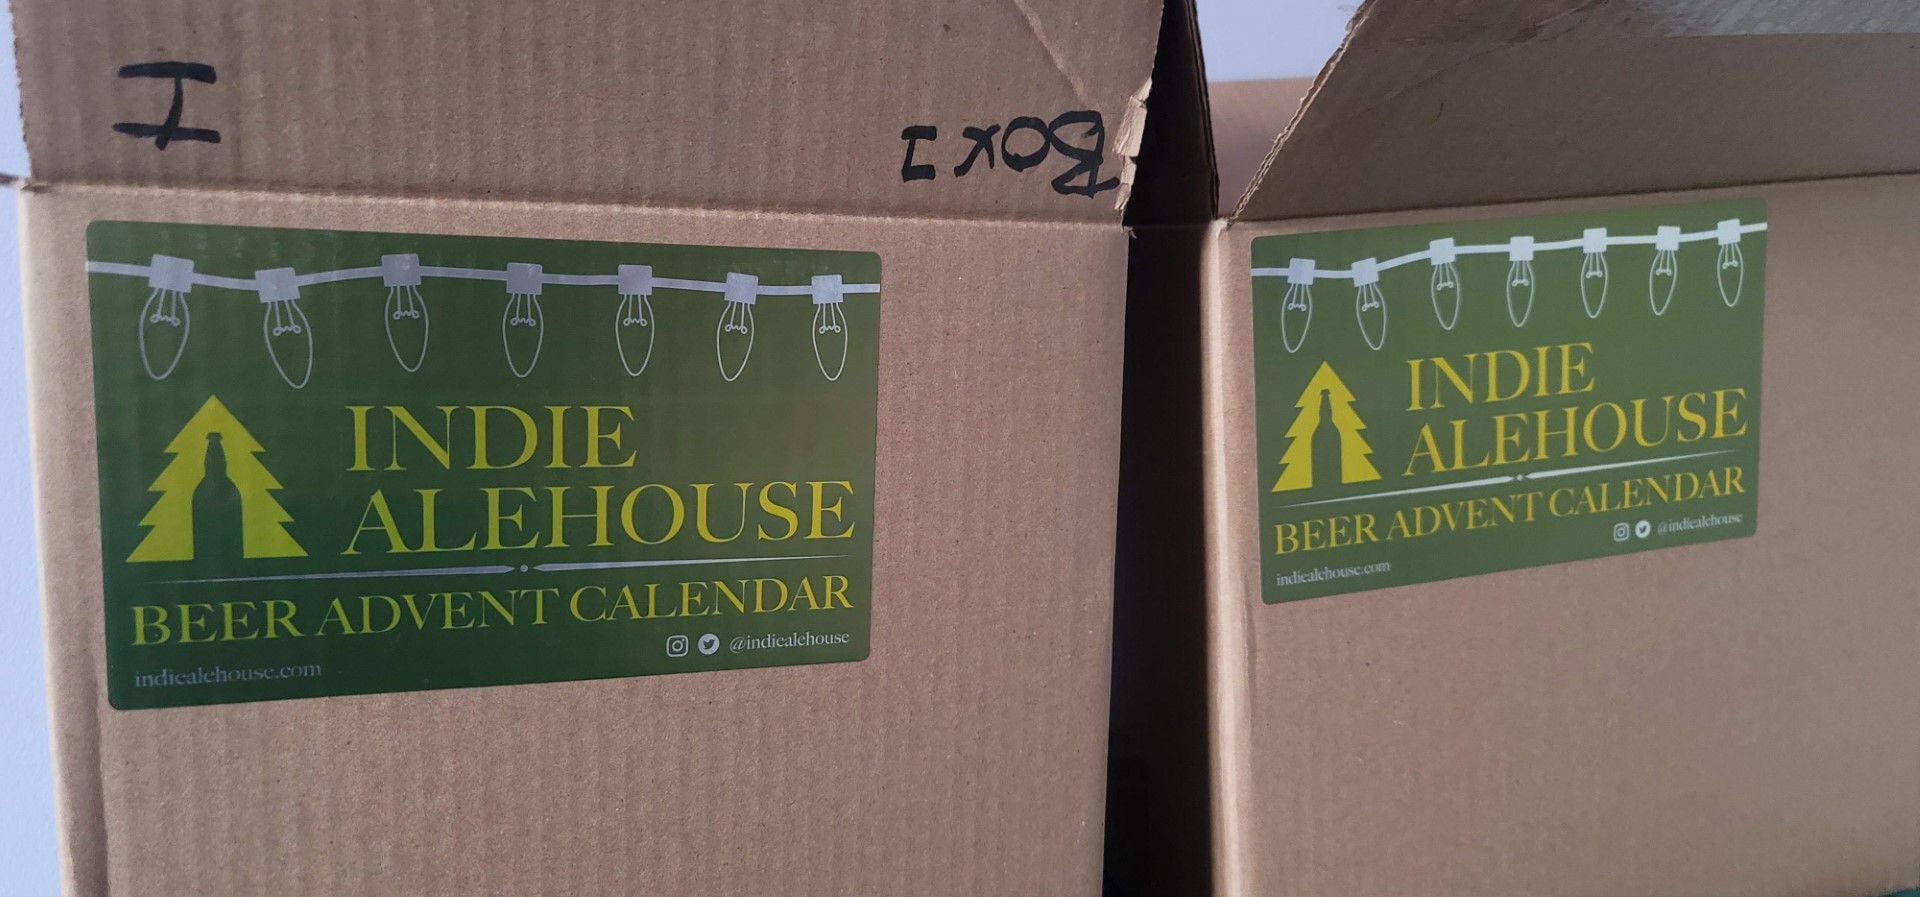 Indie Ale House beer advent calendar